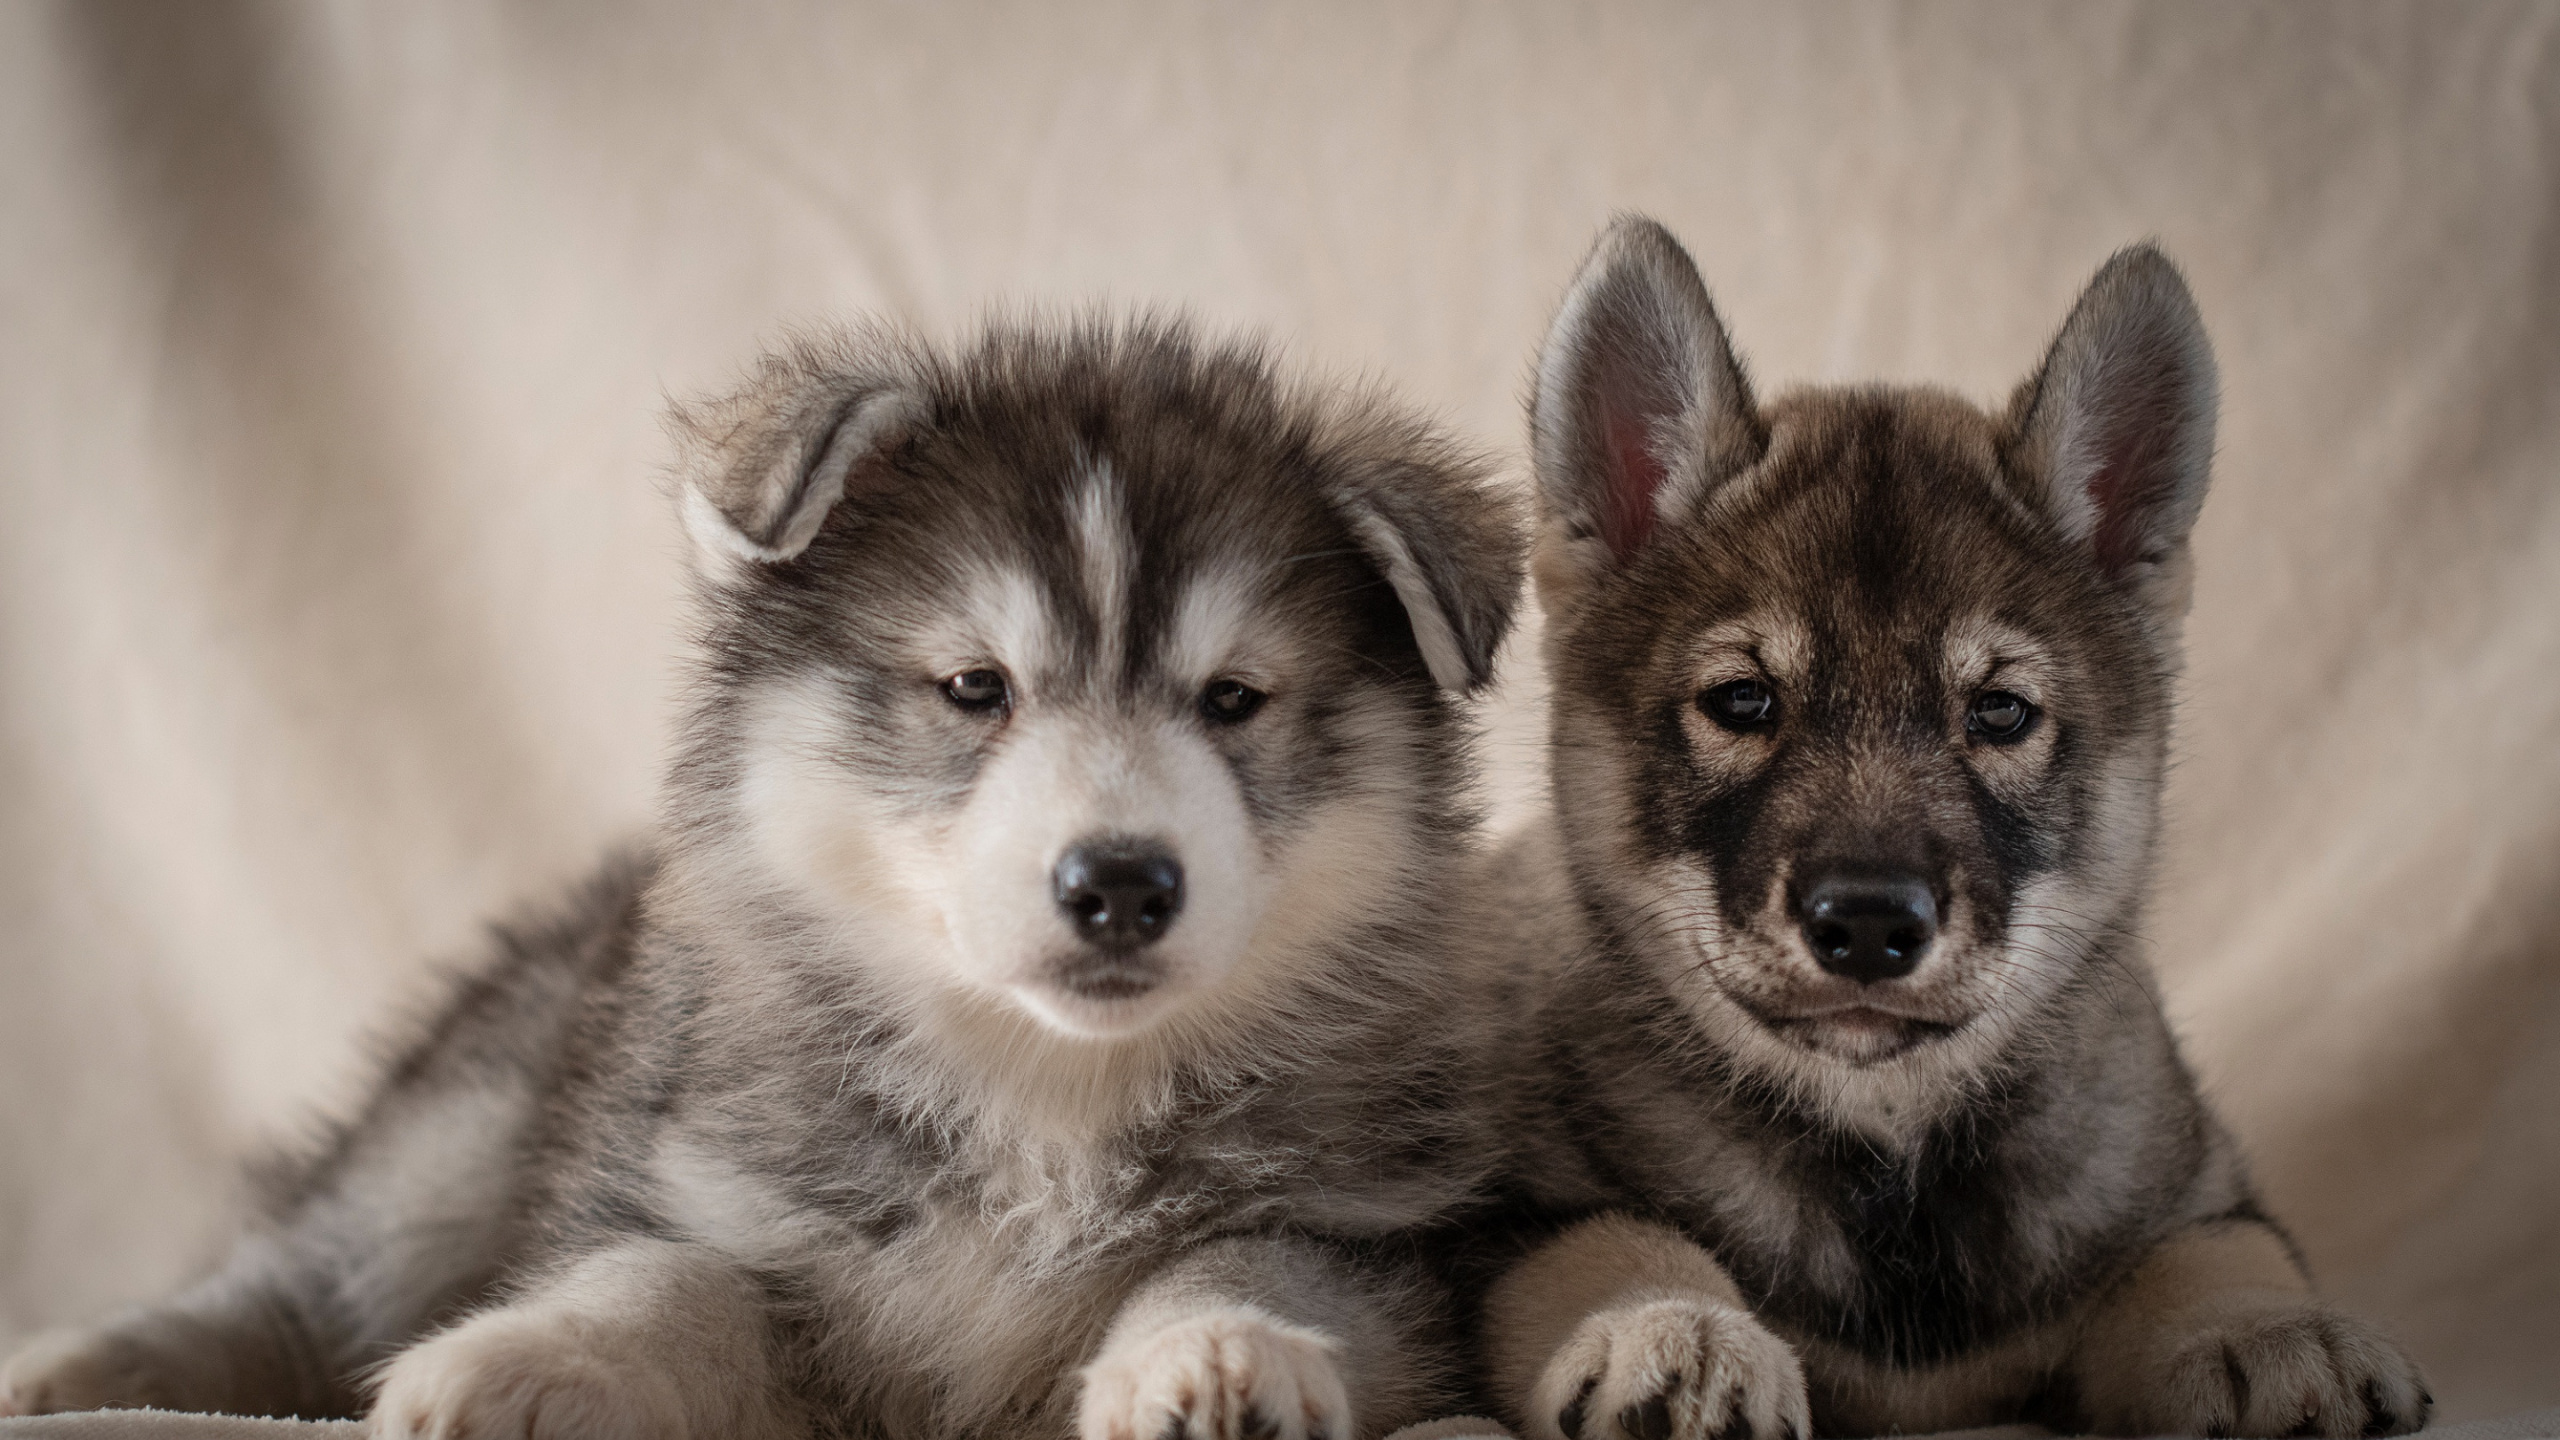 小狗, 阿拉斯加雪橇犬, 品种的狗, 萨哈林赫斯基, Saarloos那只狼狗 壁纸 2560x1440 允许